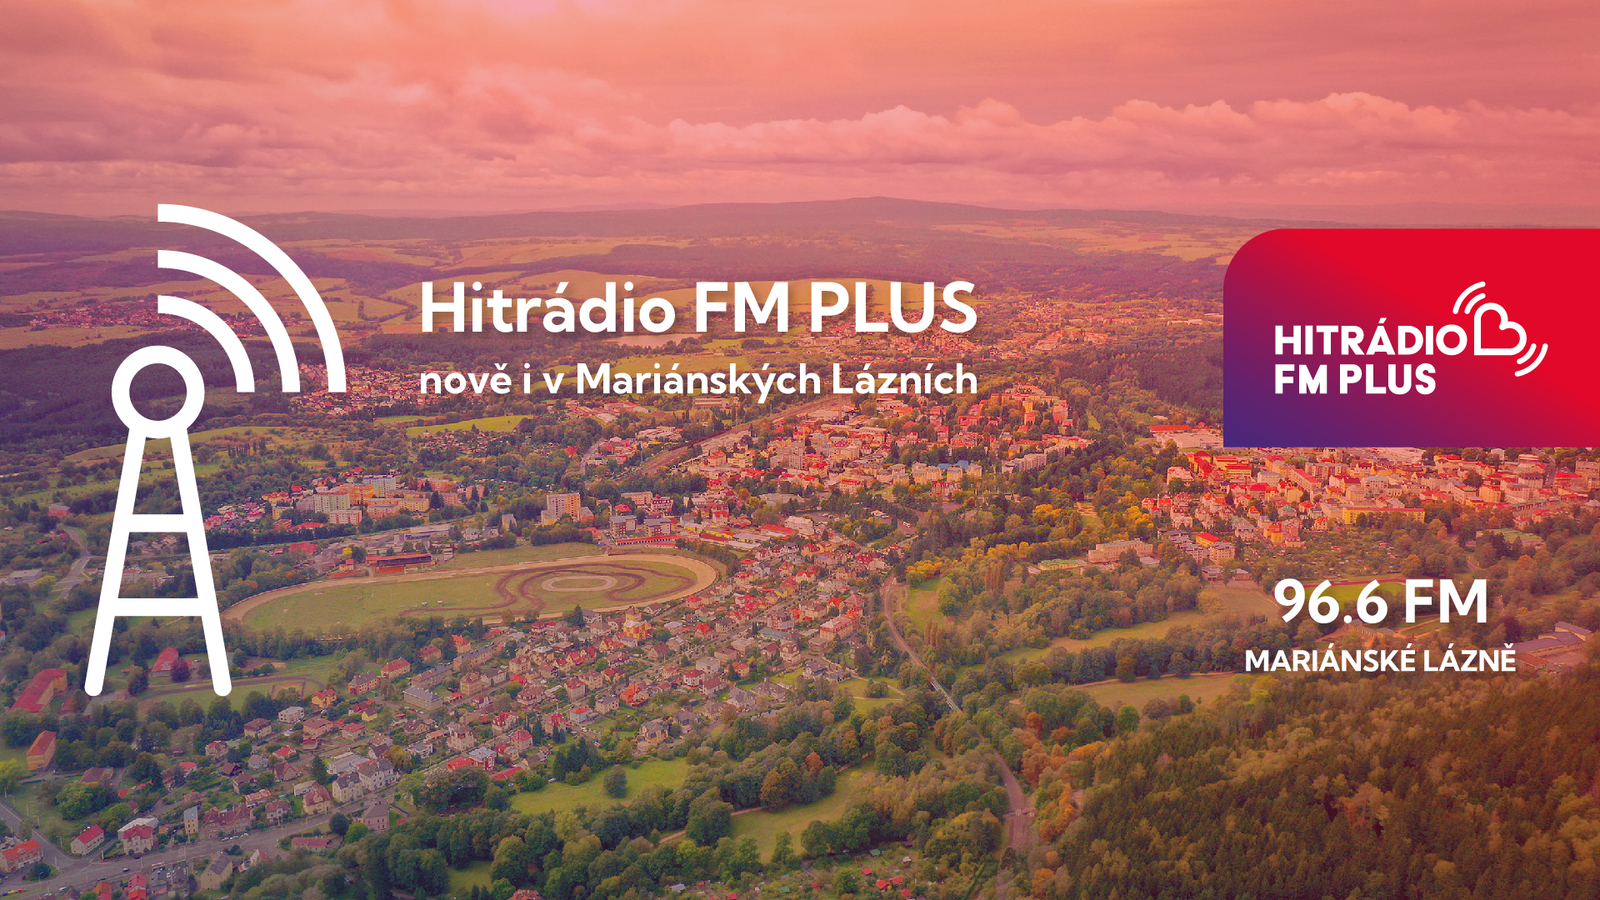 Hitrádio FM Plus nově naladíte i v Mariánských Lázních!